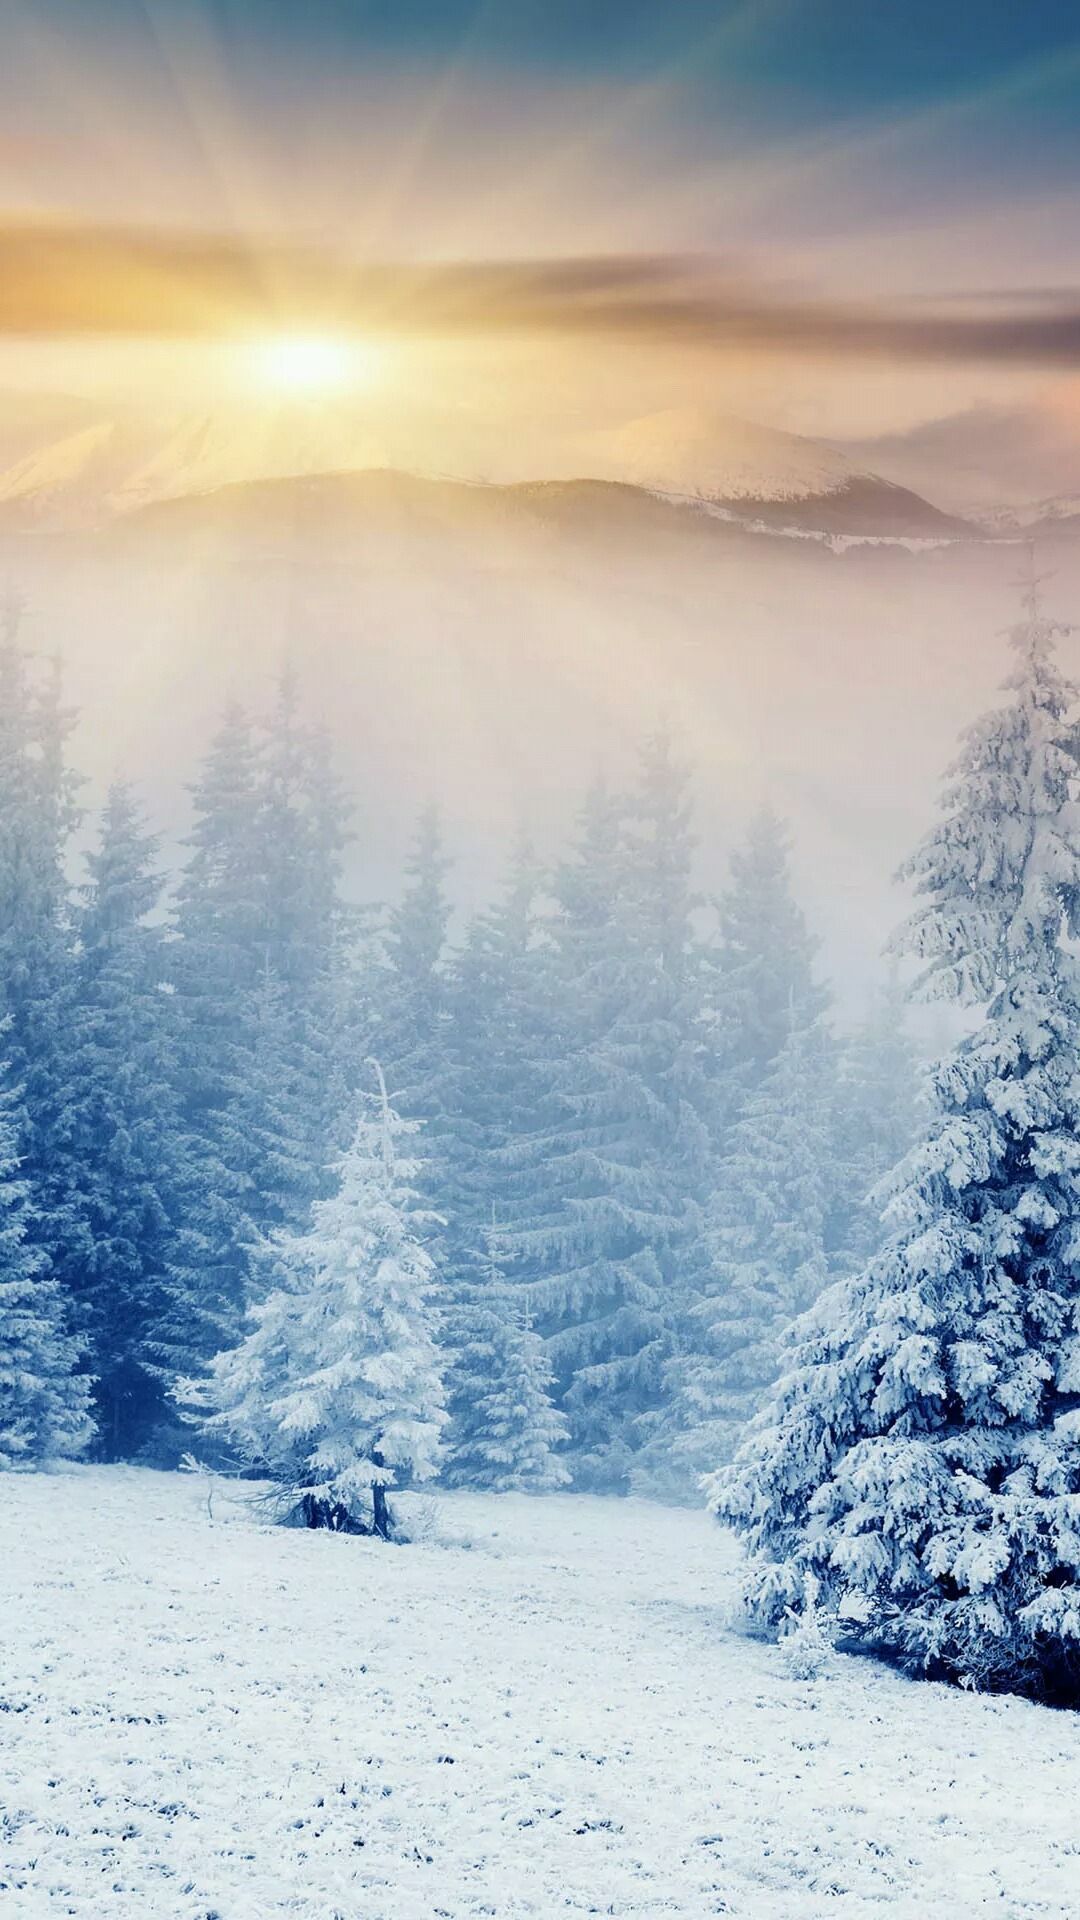 Winter Forest. Winter landscape, Winter background, Winter scenery